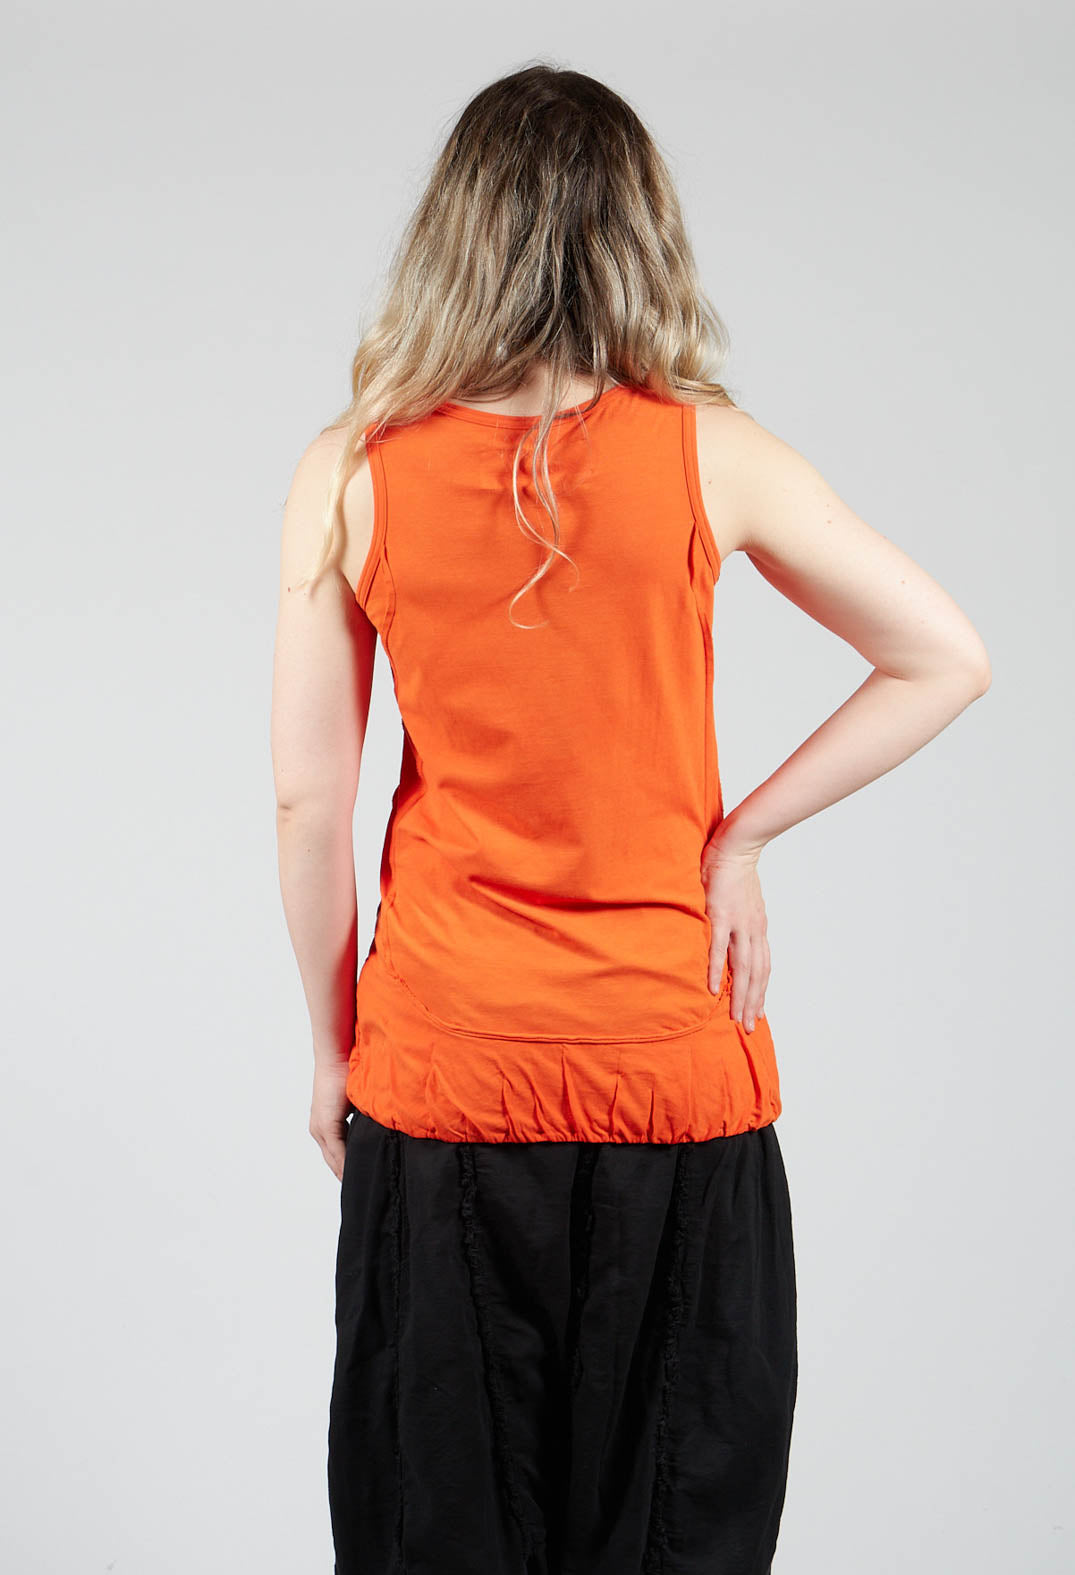 Sleeveless Jersey T Shirt wih Ruffle Hem in Orange